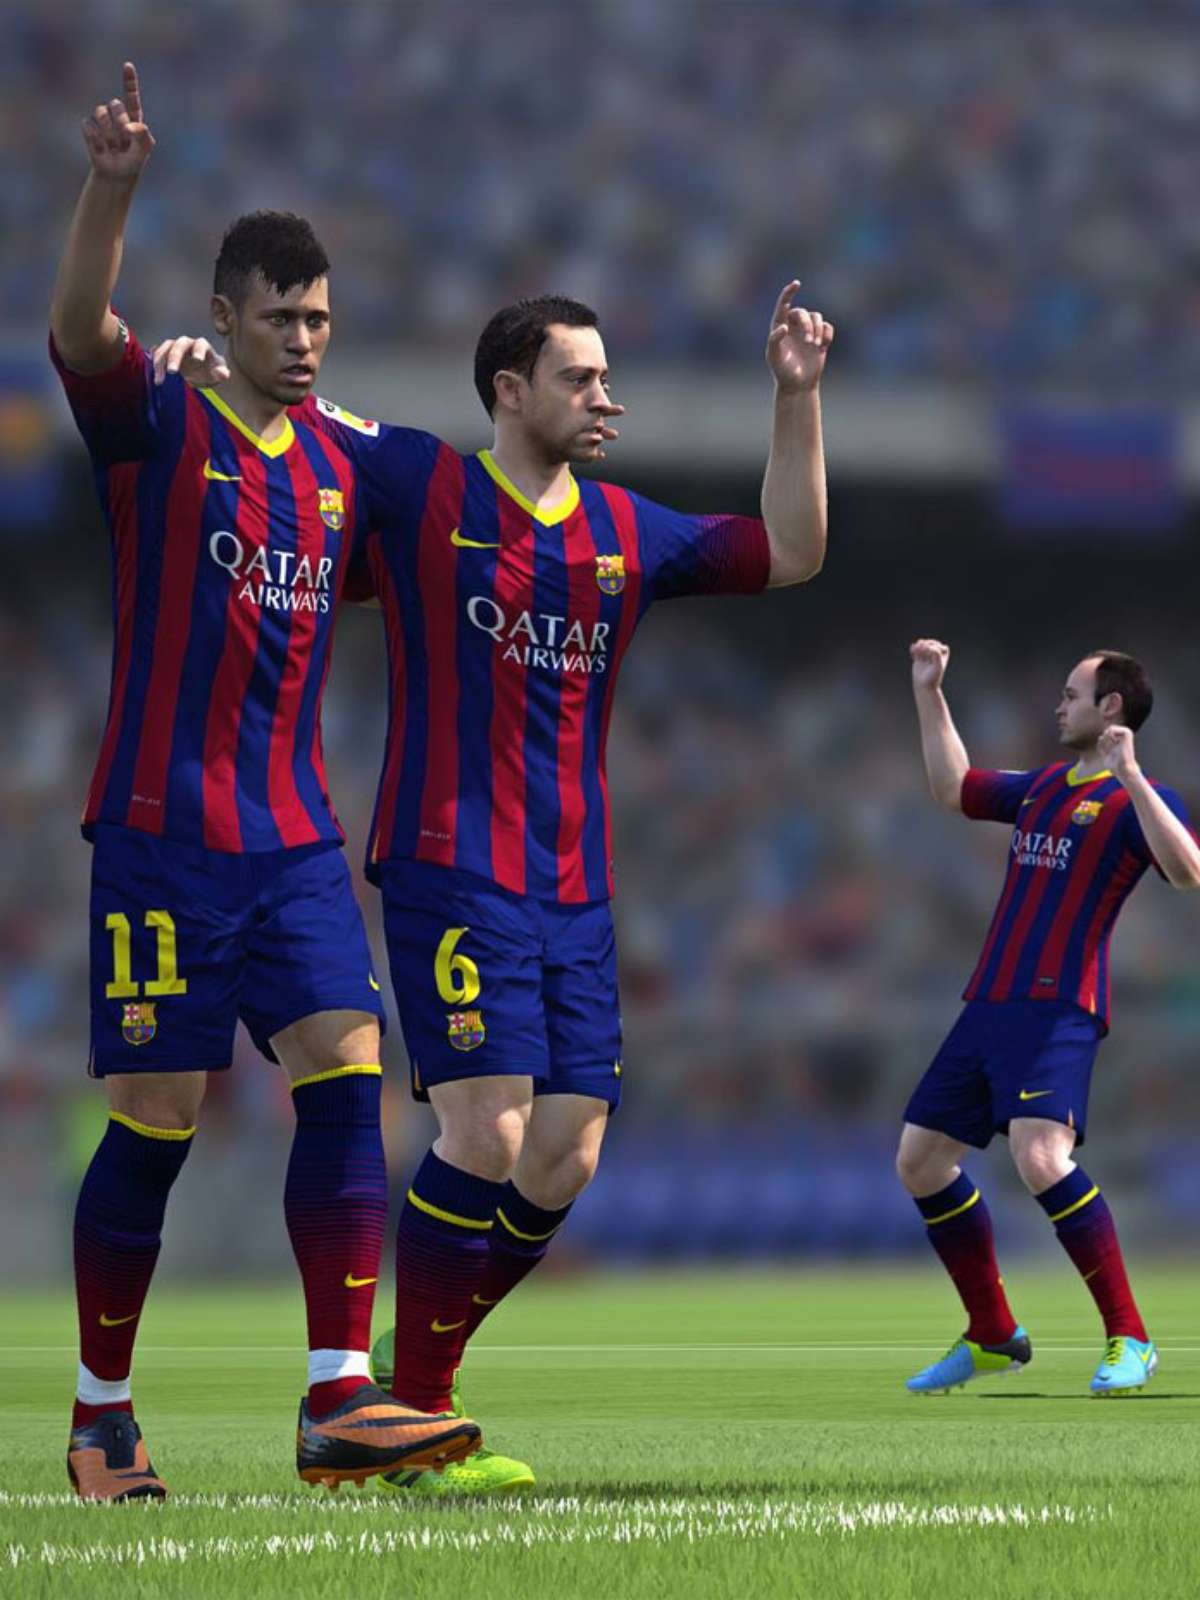 FIFA 14 – Revelada capa para PS4 e Xbox One, e aspectos do